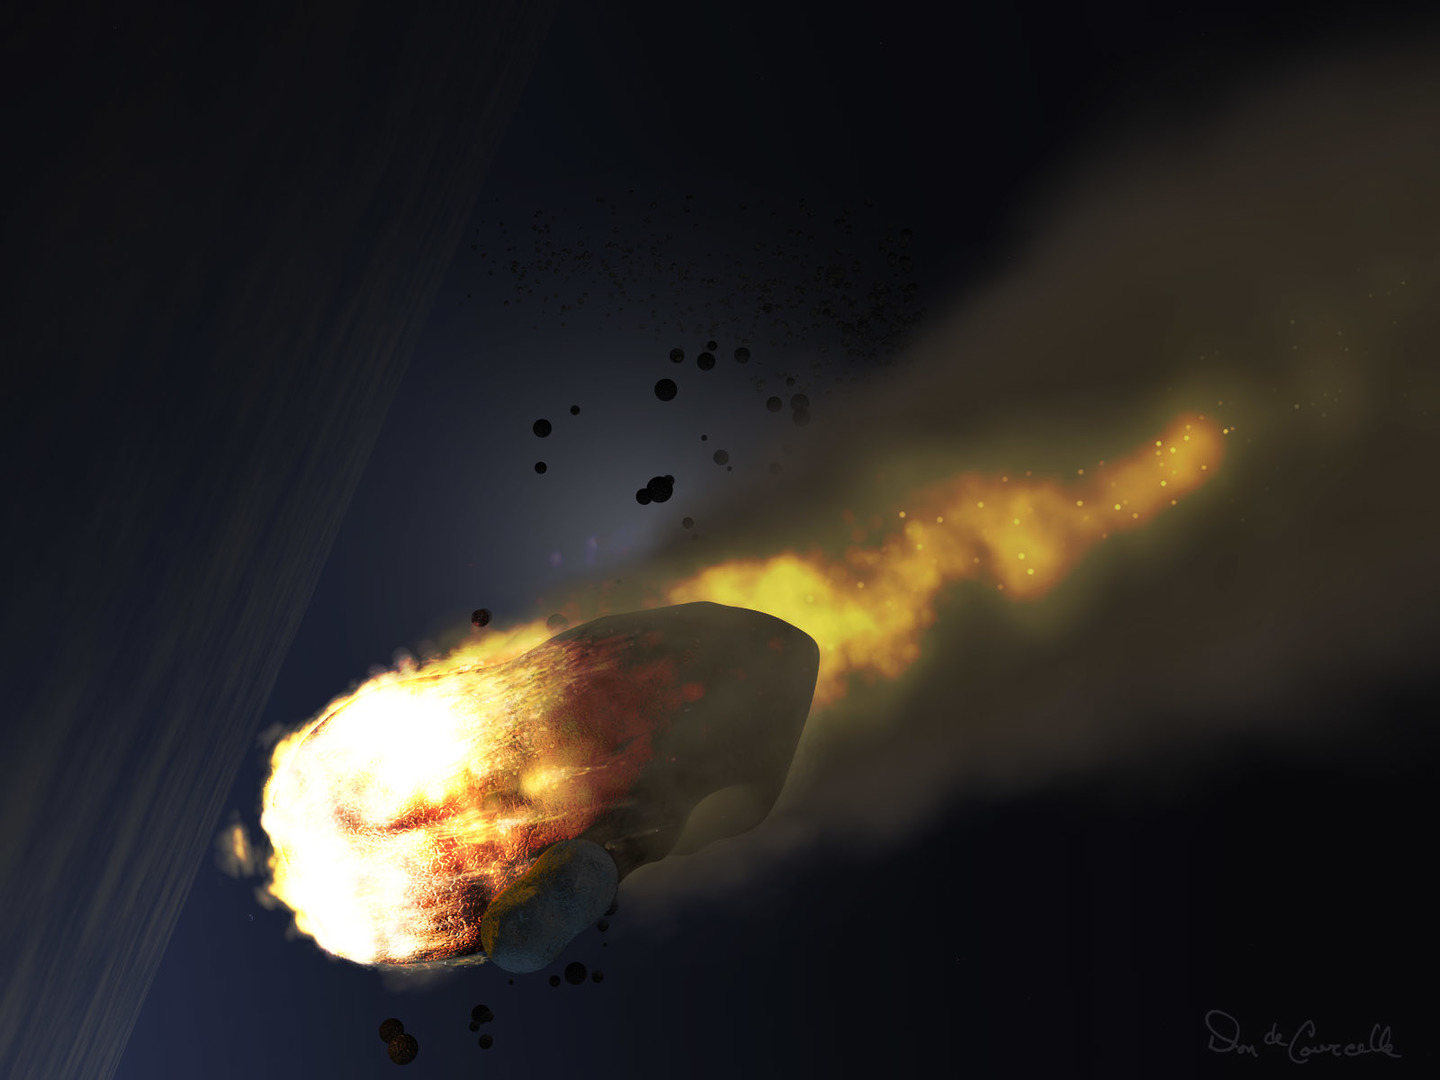 Afortunadamente, el asteroide tuvo la buena voluntad de explotar a 20 kilómetros de altura.